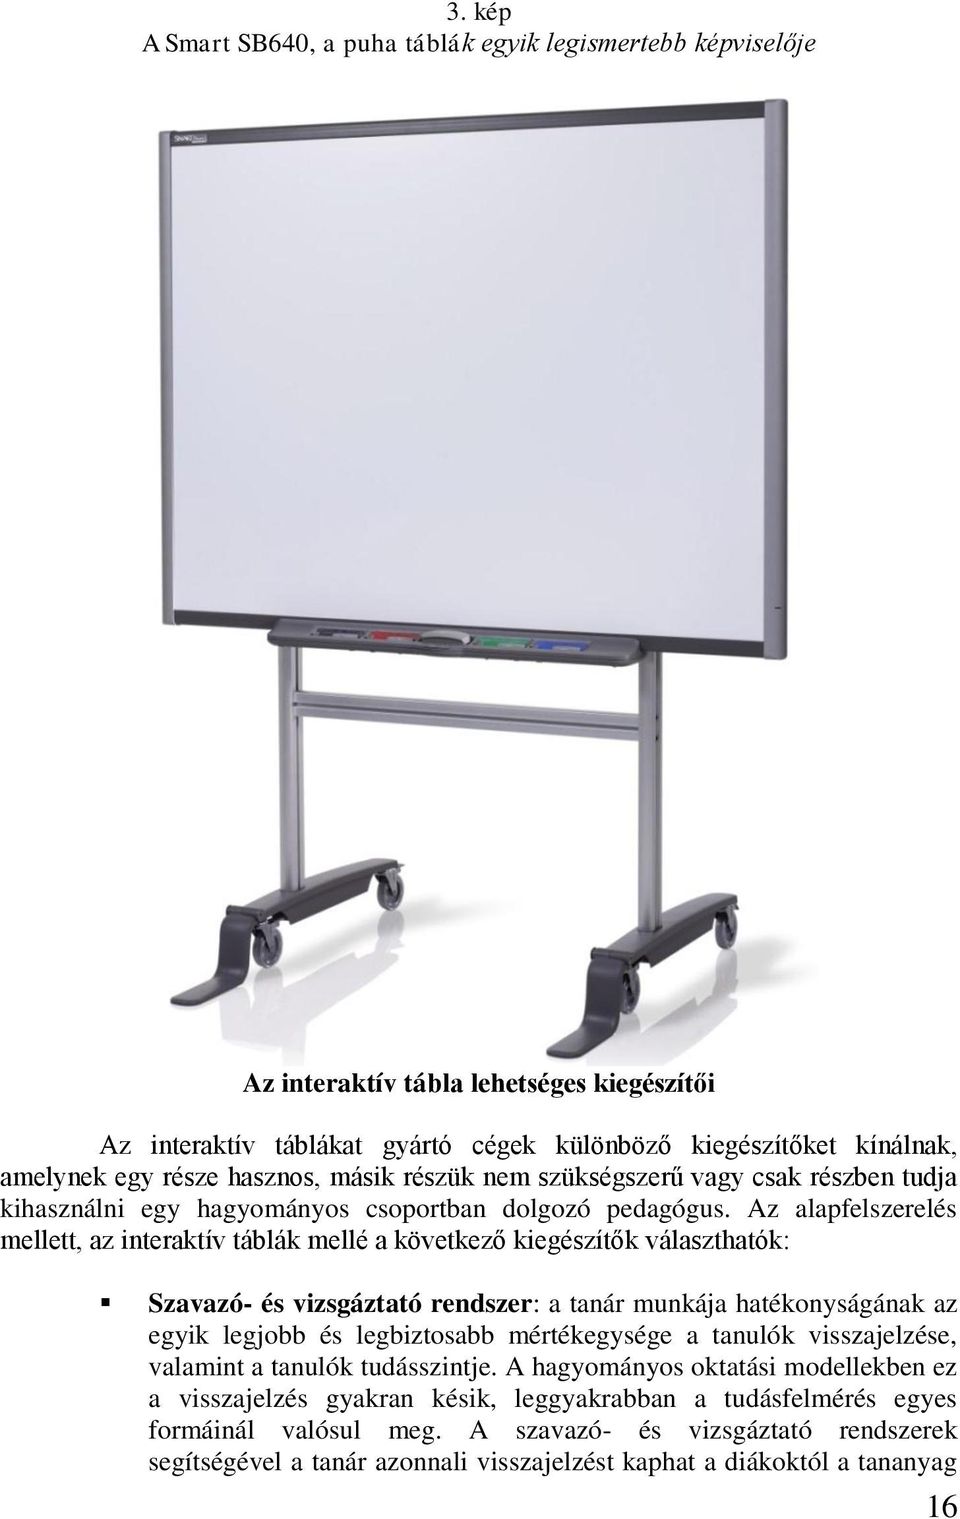 Az alapfelszerelés mellett, az interaktív táblák mellé a következő kiegészítők választhatók: Szavazó- és vizsgáztató rendszer: a tanár munkája hatékonyságának az egyik legjobb és legbiztosabb